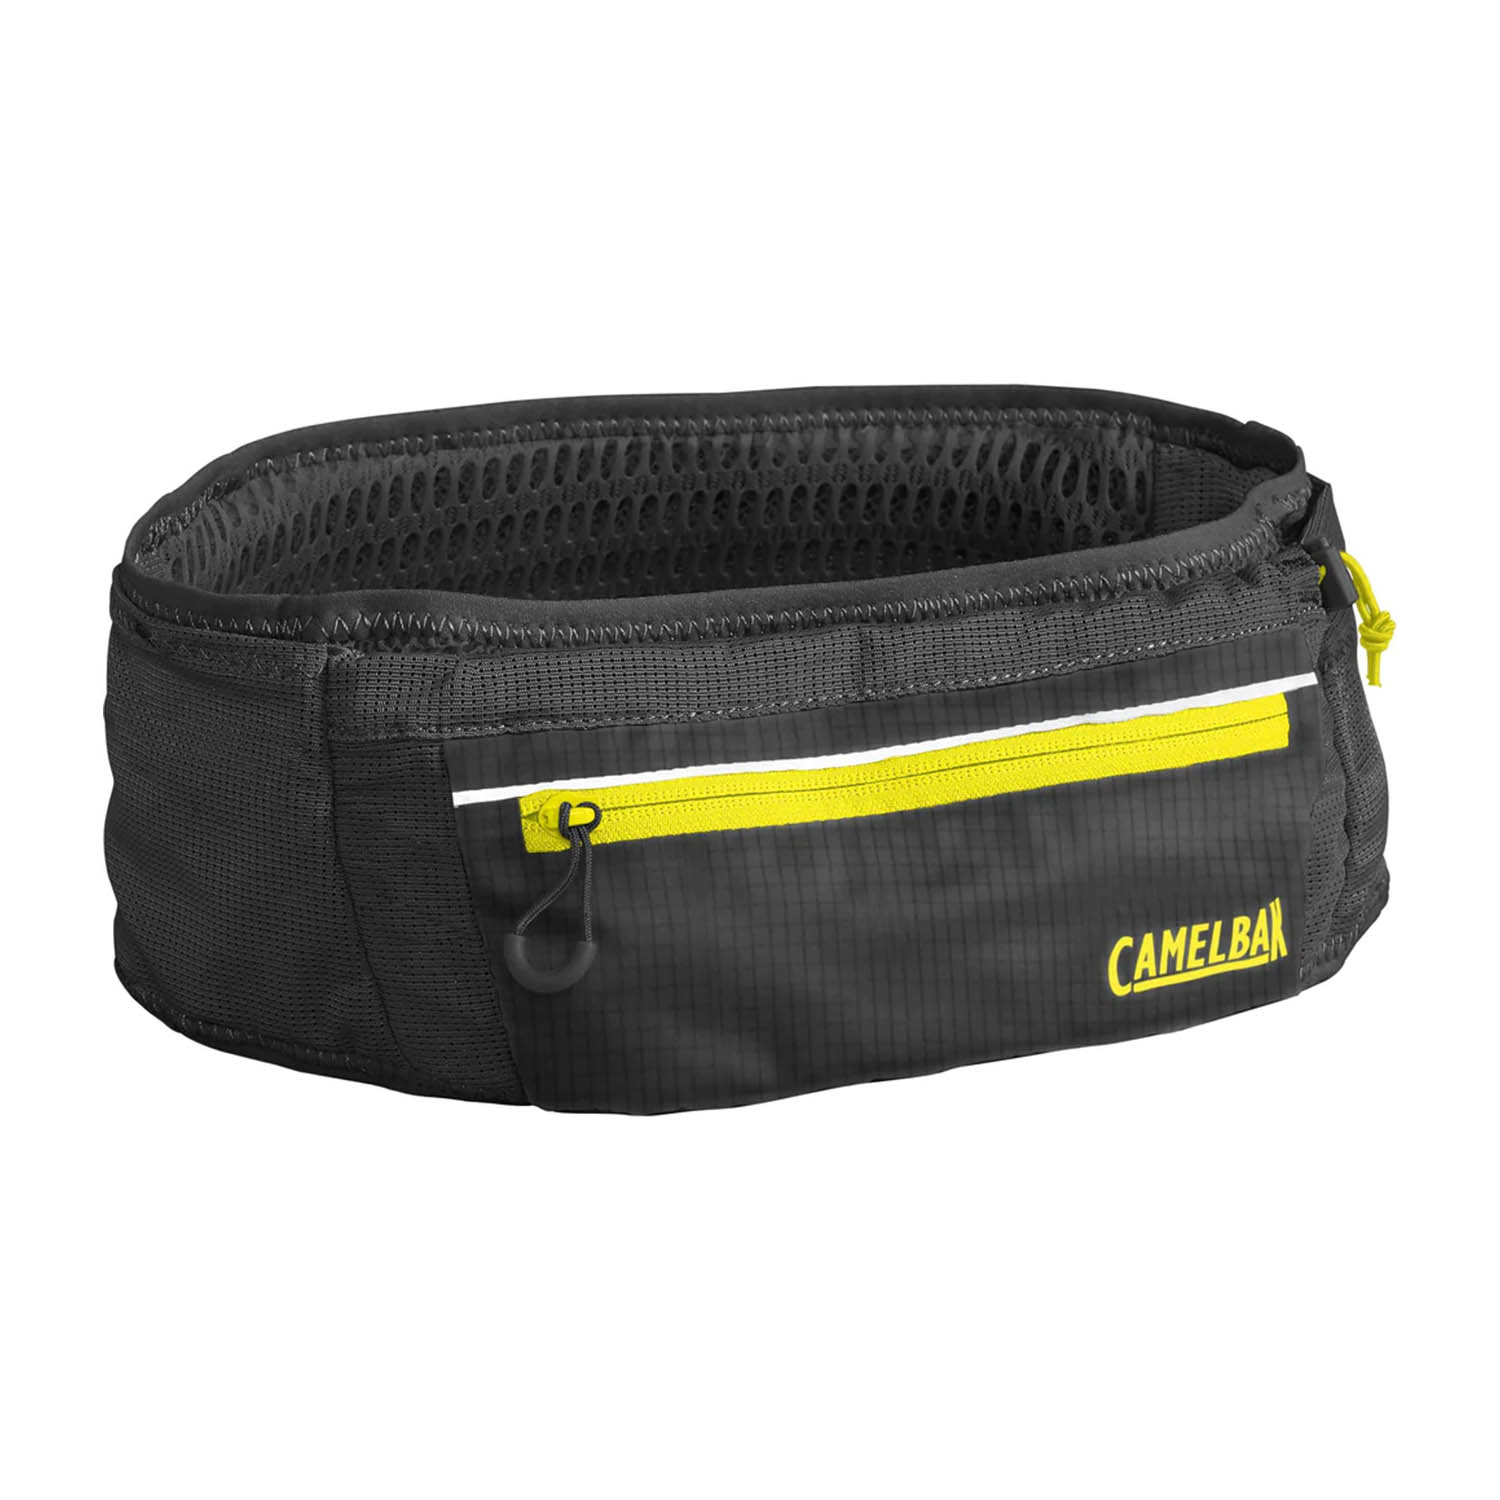 Camelbak Ultra Cinturón - Black/Safety Yellow